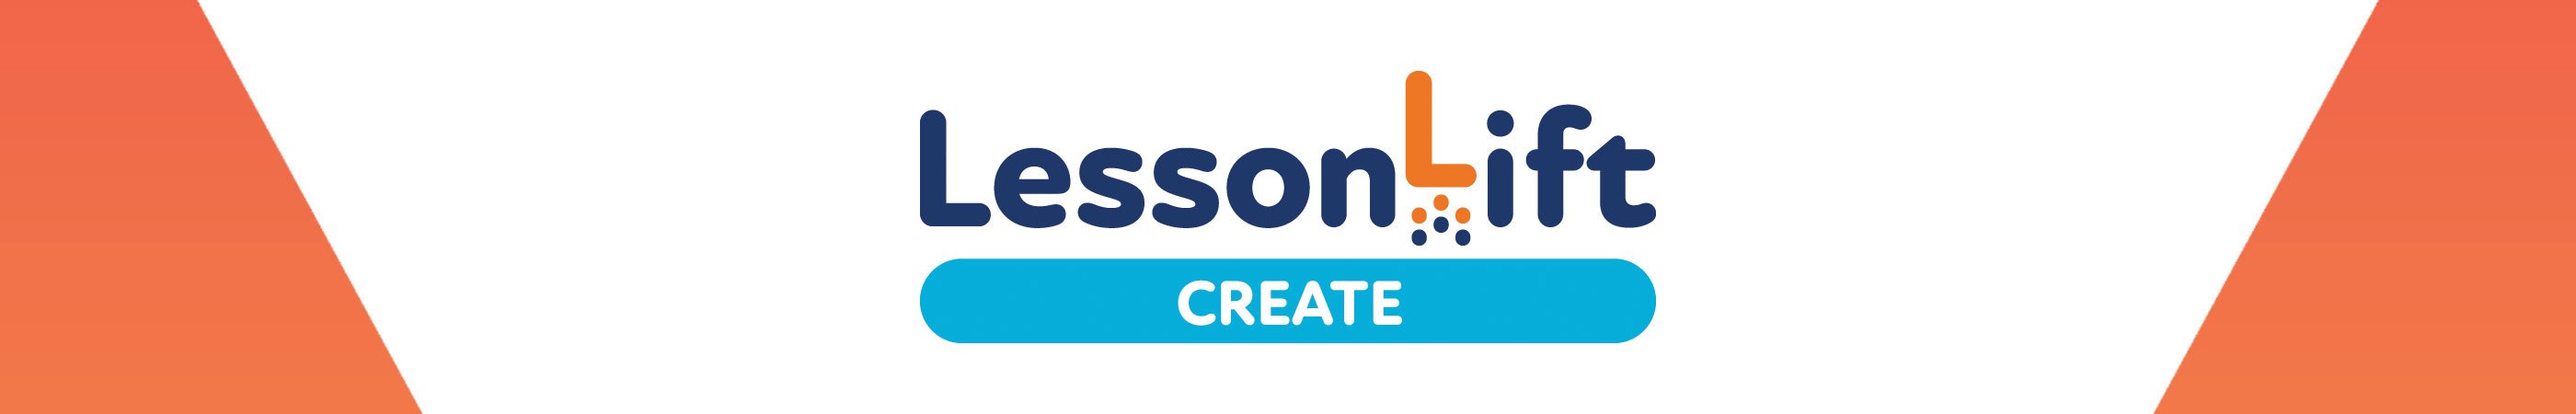 lessonlift-create_450_2